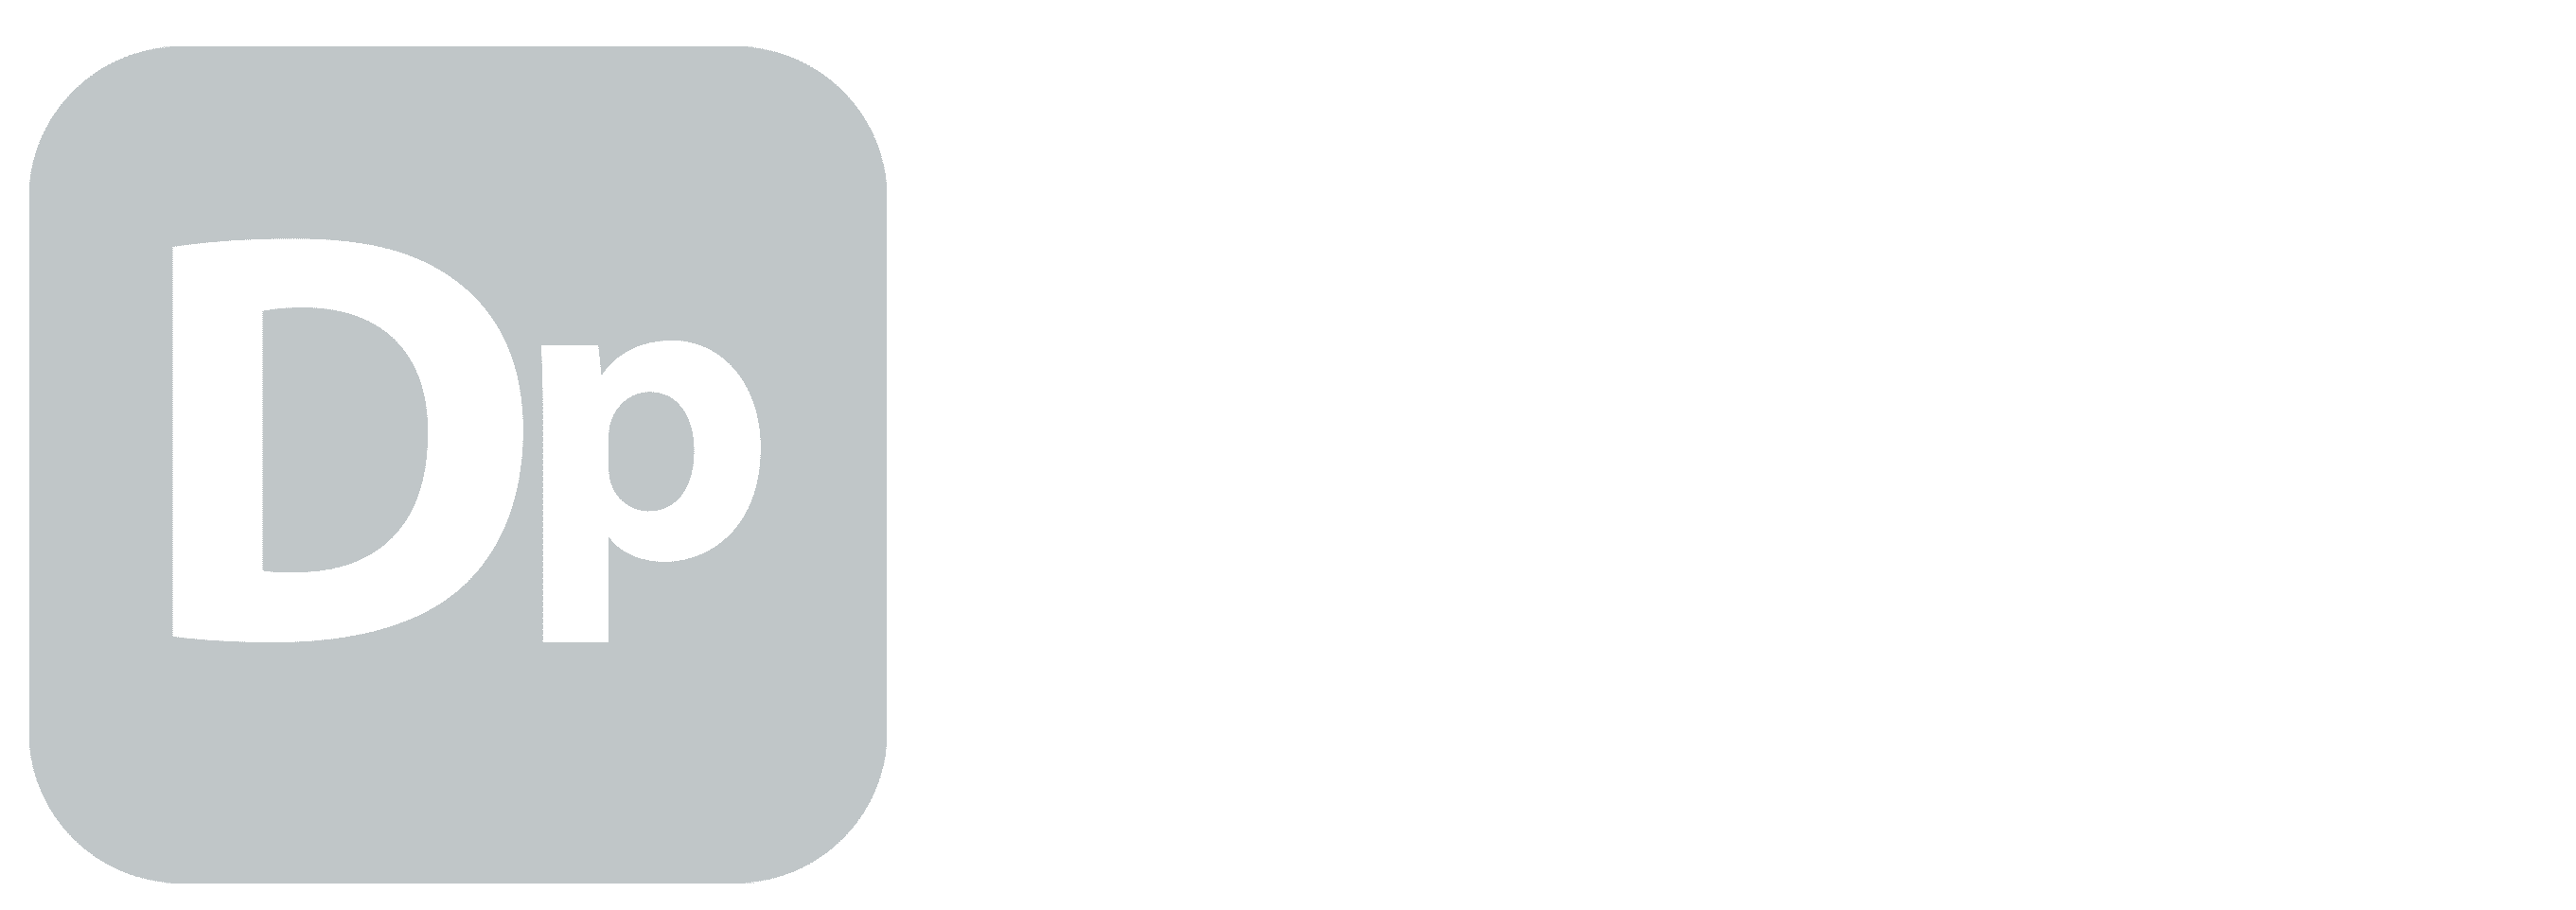 Daniel Pregioni